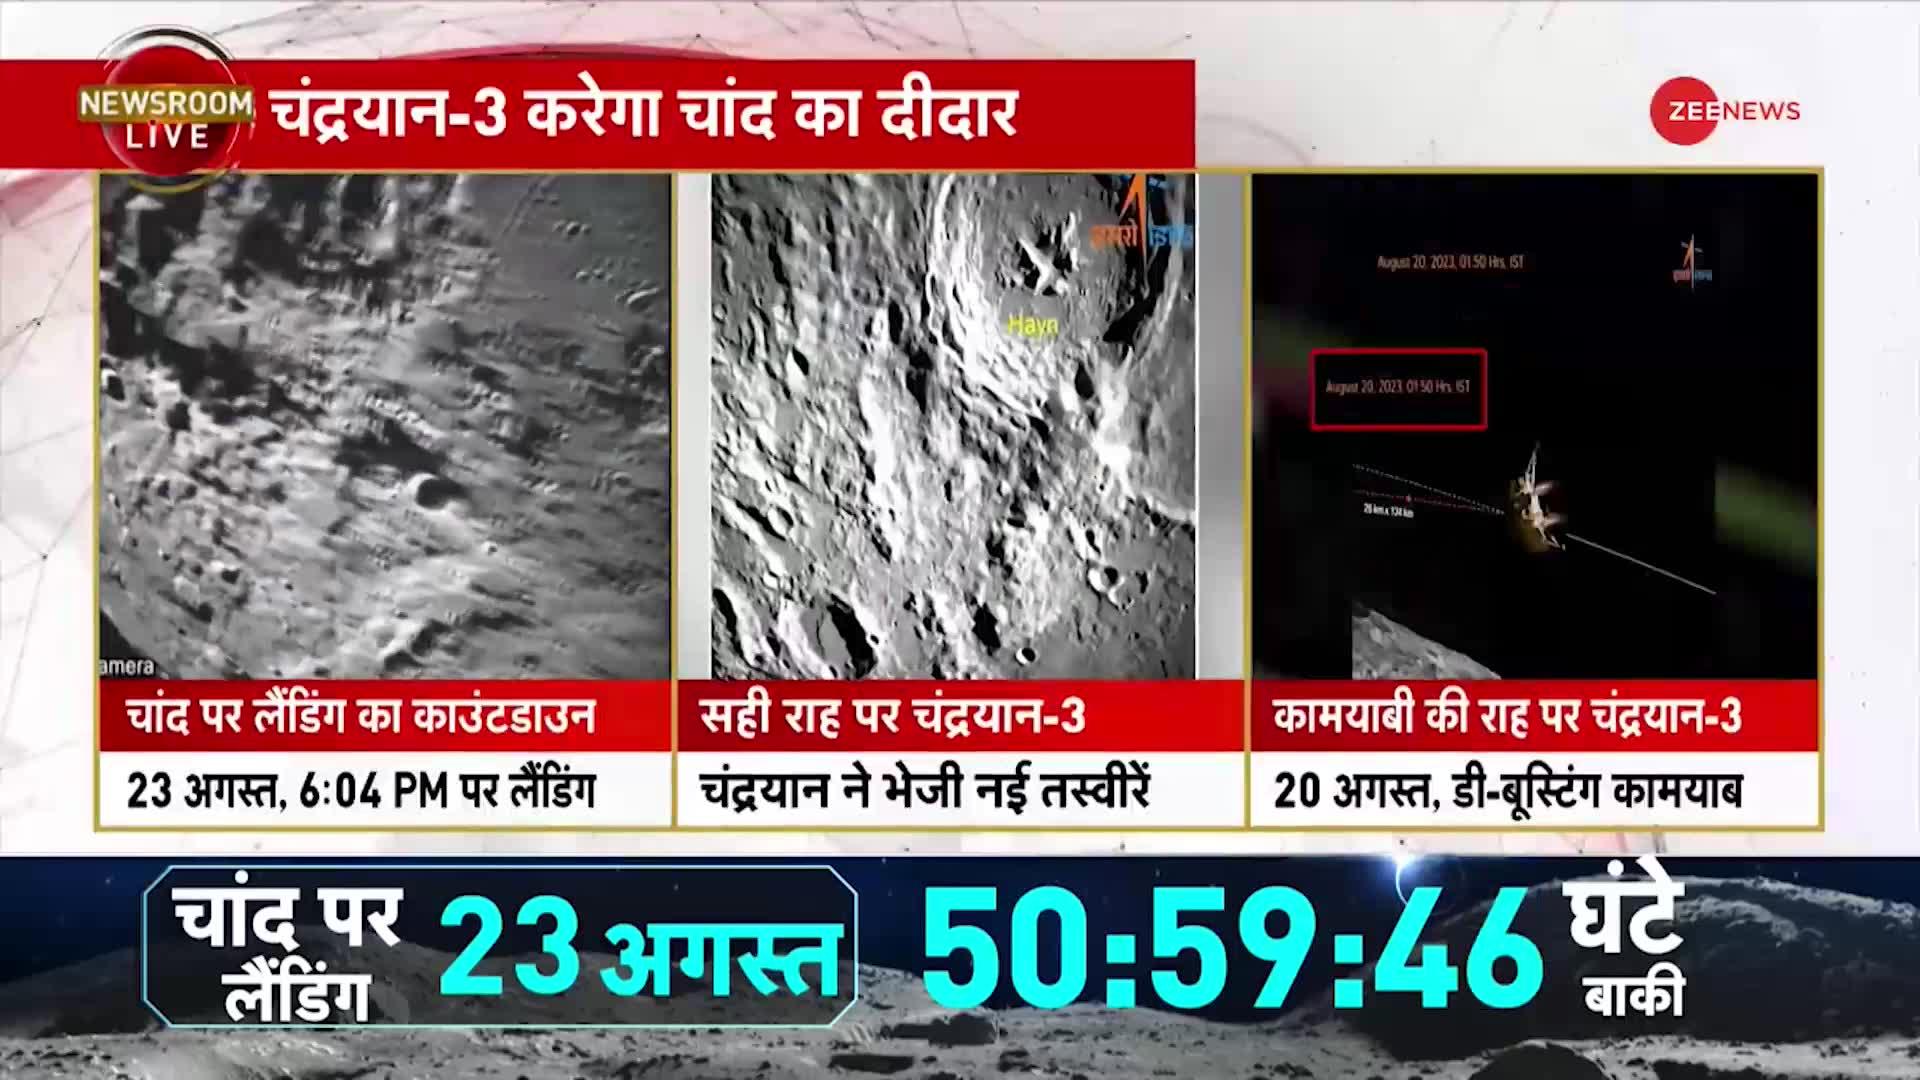 Chandrayaan-3 Live: चांद से चंद कदम की दूरी पर चंद्रयान, 23 अगस्त शाम 6:04 पर लैंडिंग